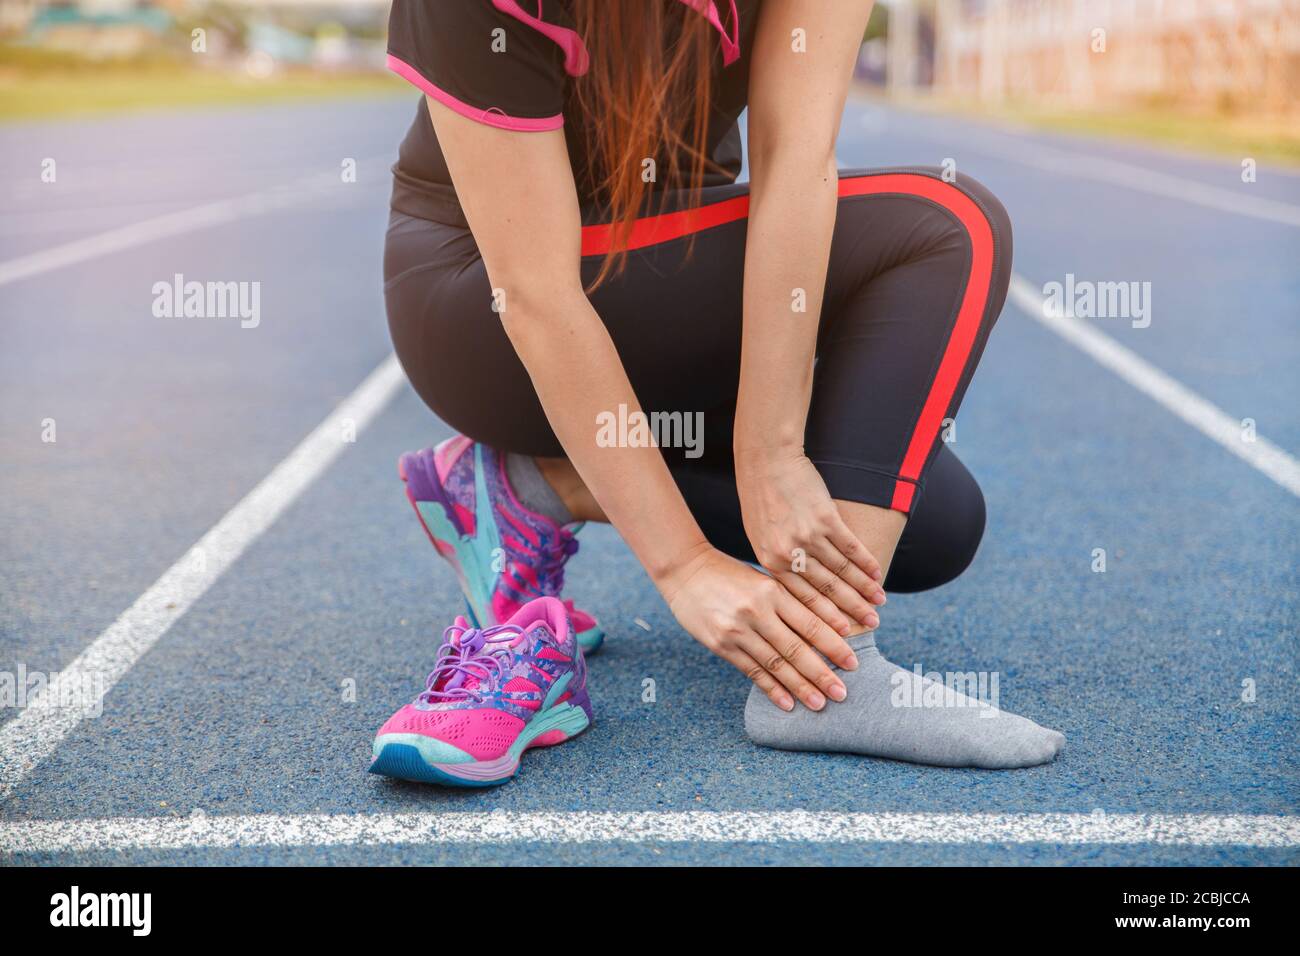 Donna atleta di runner ferita e dolore alla caviglia. Donna che soffre di caviglia dolorosa mentre corre sulla pista blu gommata. Foto Stock